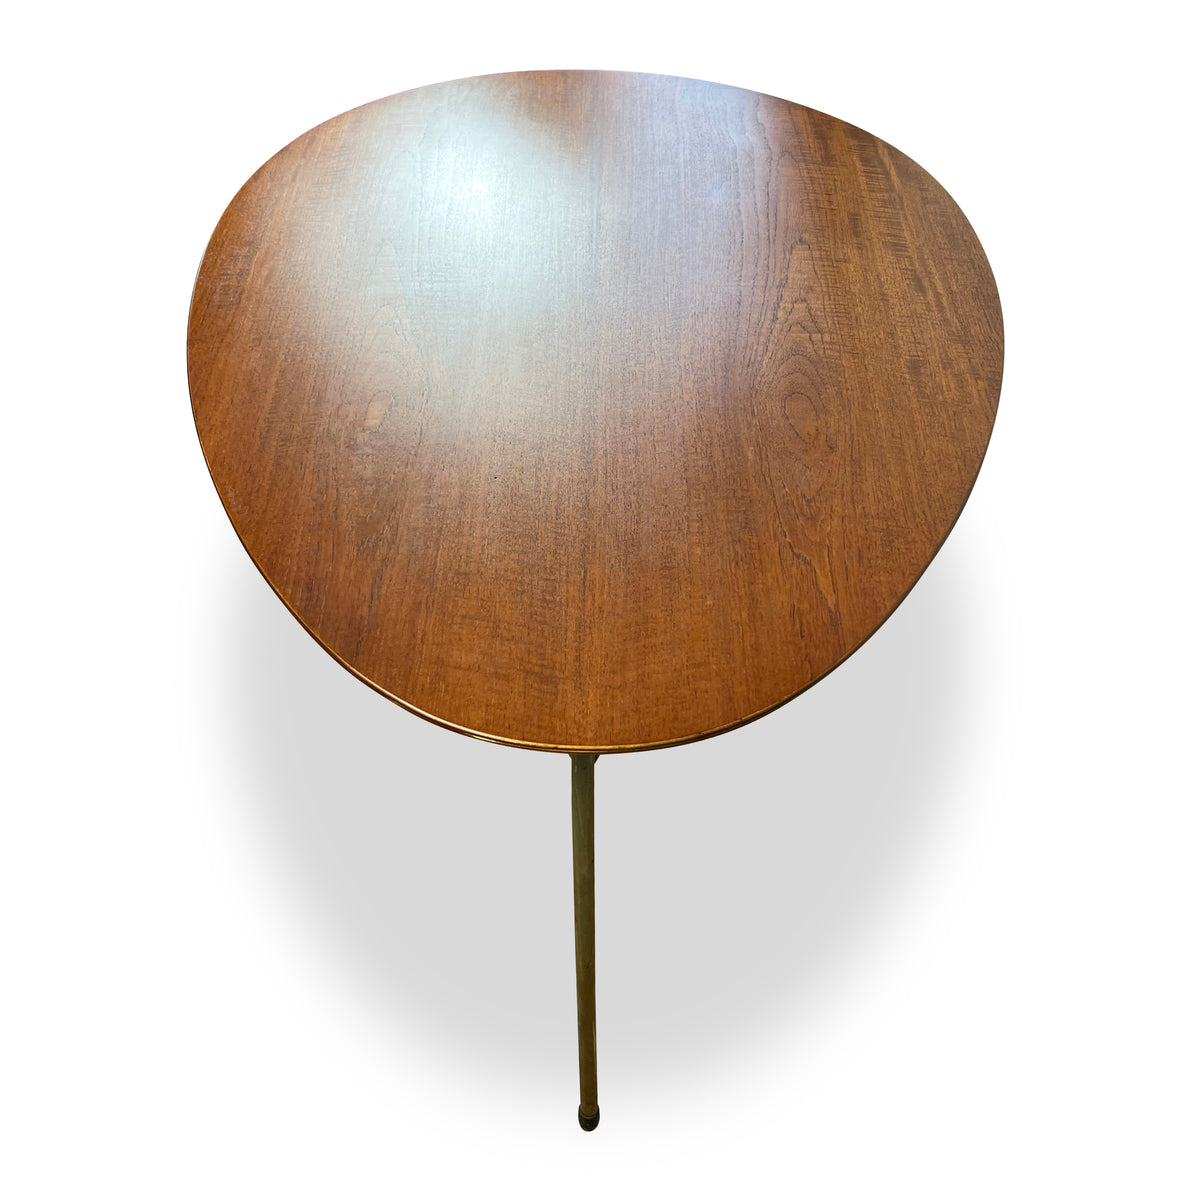 Arne Jacobsen for Fritz Hansen Egg Table